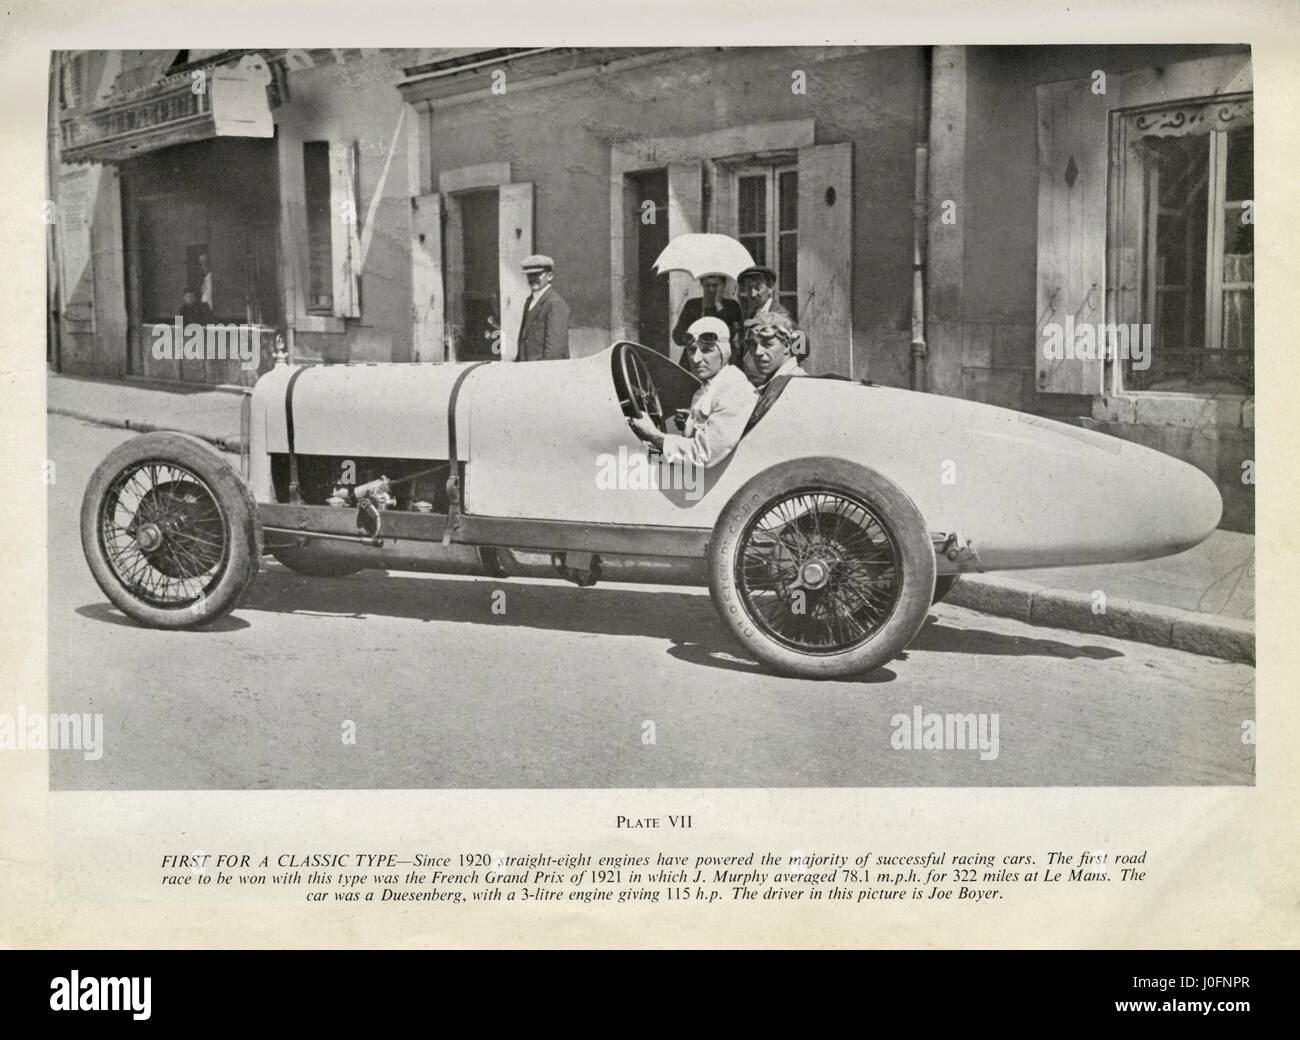 Joseph Boyer in einem Duesenberg, den ersten Straight-8-Motor, ein Straßenrennen, 1921-Frankreich-Grand-Prix zu gewinnen. Der Prix gewann James Anthony (Jimmy) Murphy Stockfoto